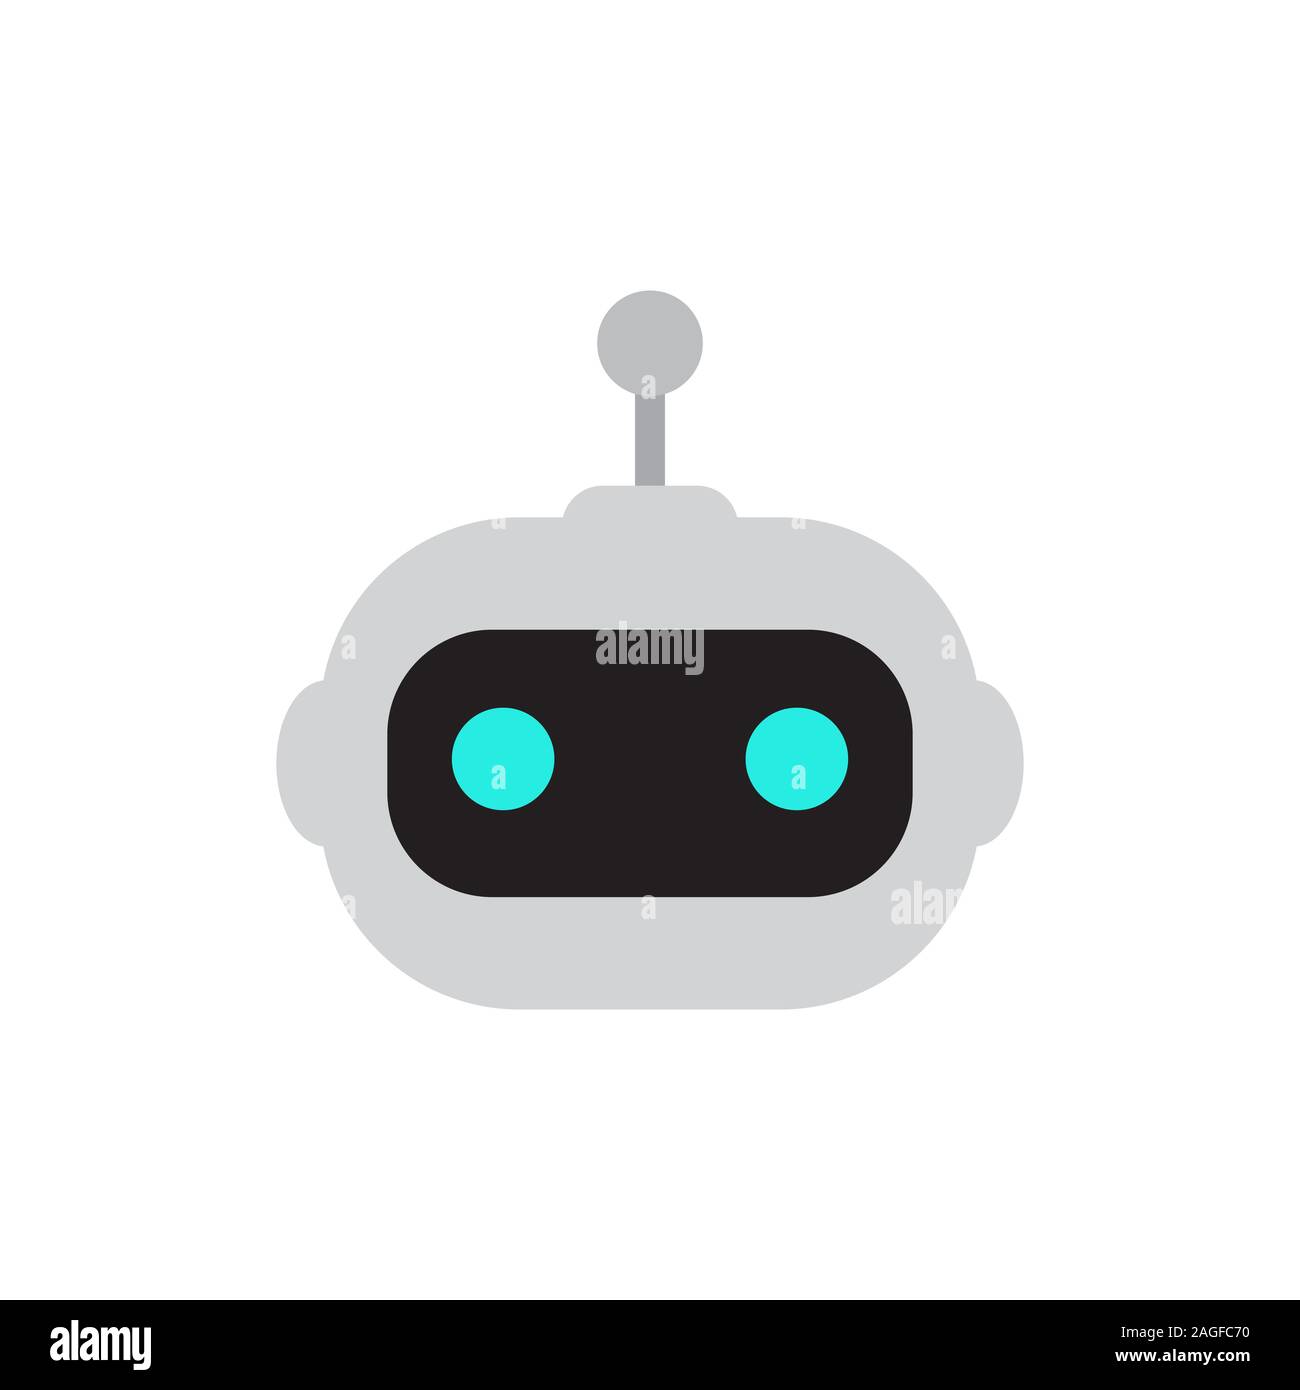 Icona del robot. Segno di Bot design. Simbolo Chatbot concetto. Moderno stile piatto personaggio dei fumetti illustrazione. Isolato su sfondo bianco Illustrazione Vettoriale